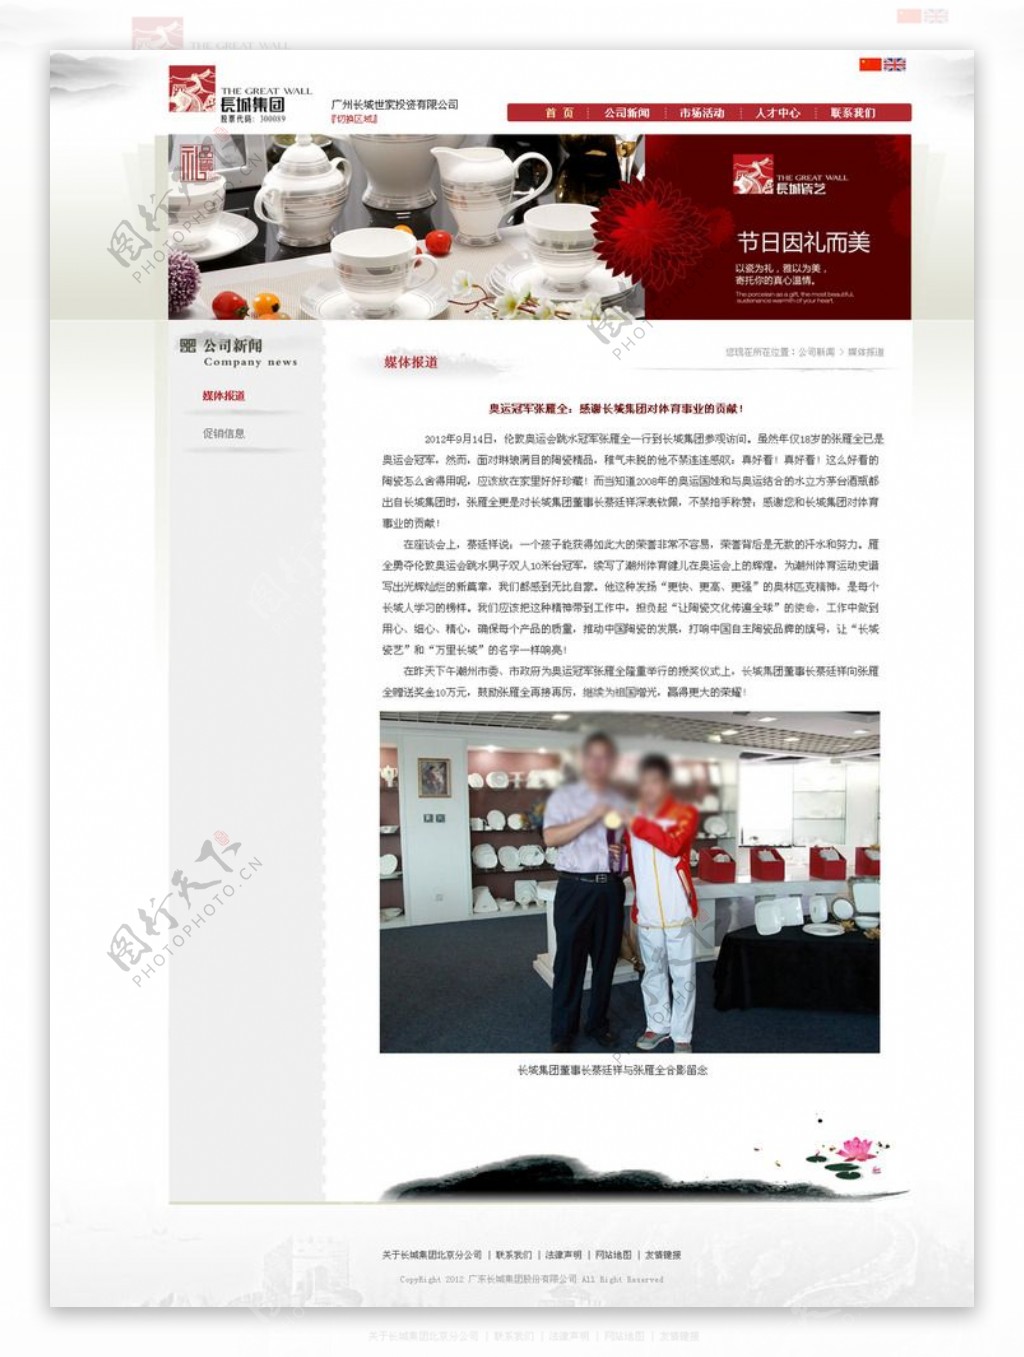 陶瓷网站官网模版公司新闻详细页